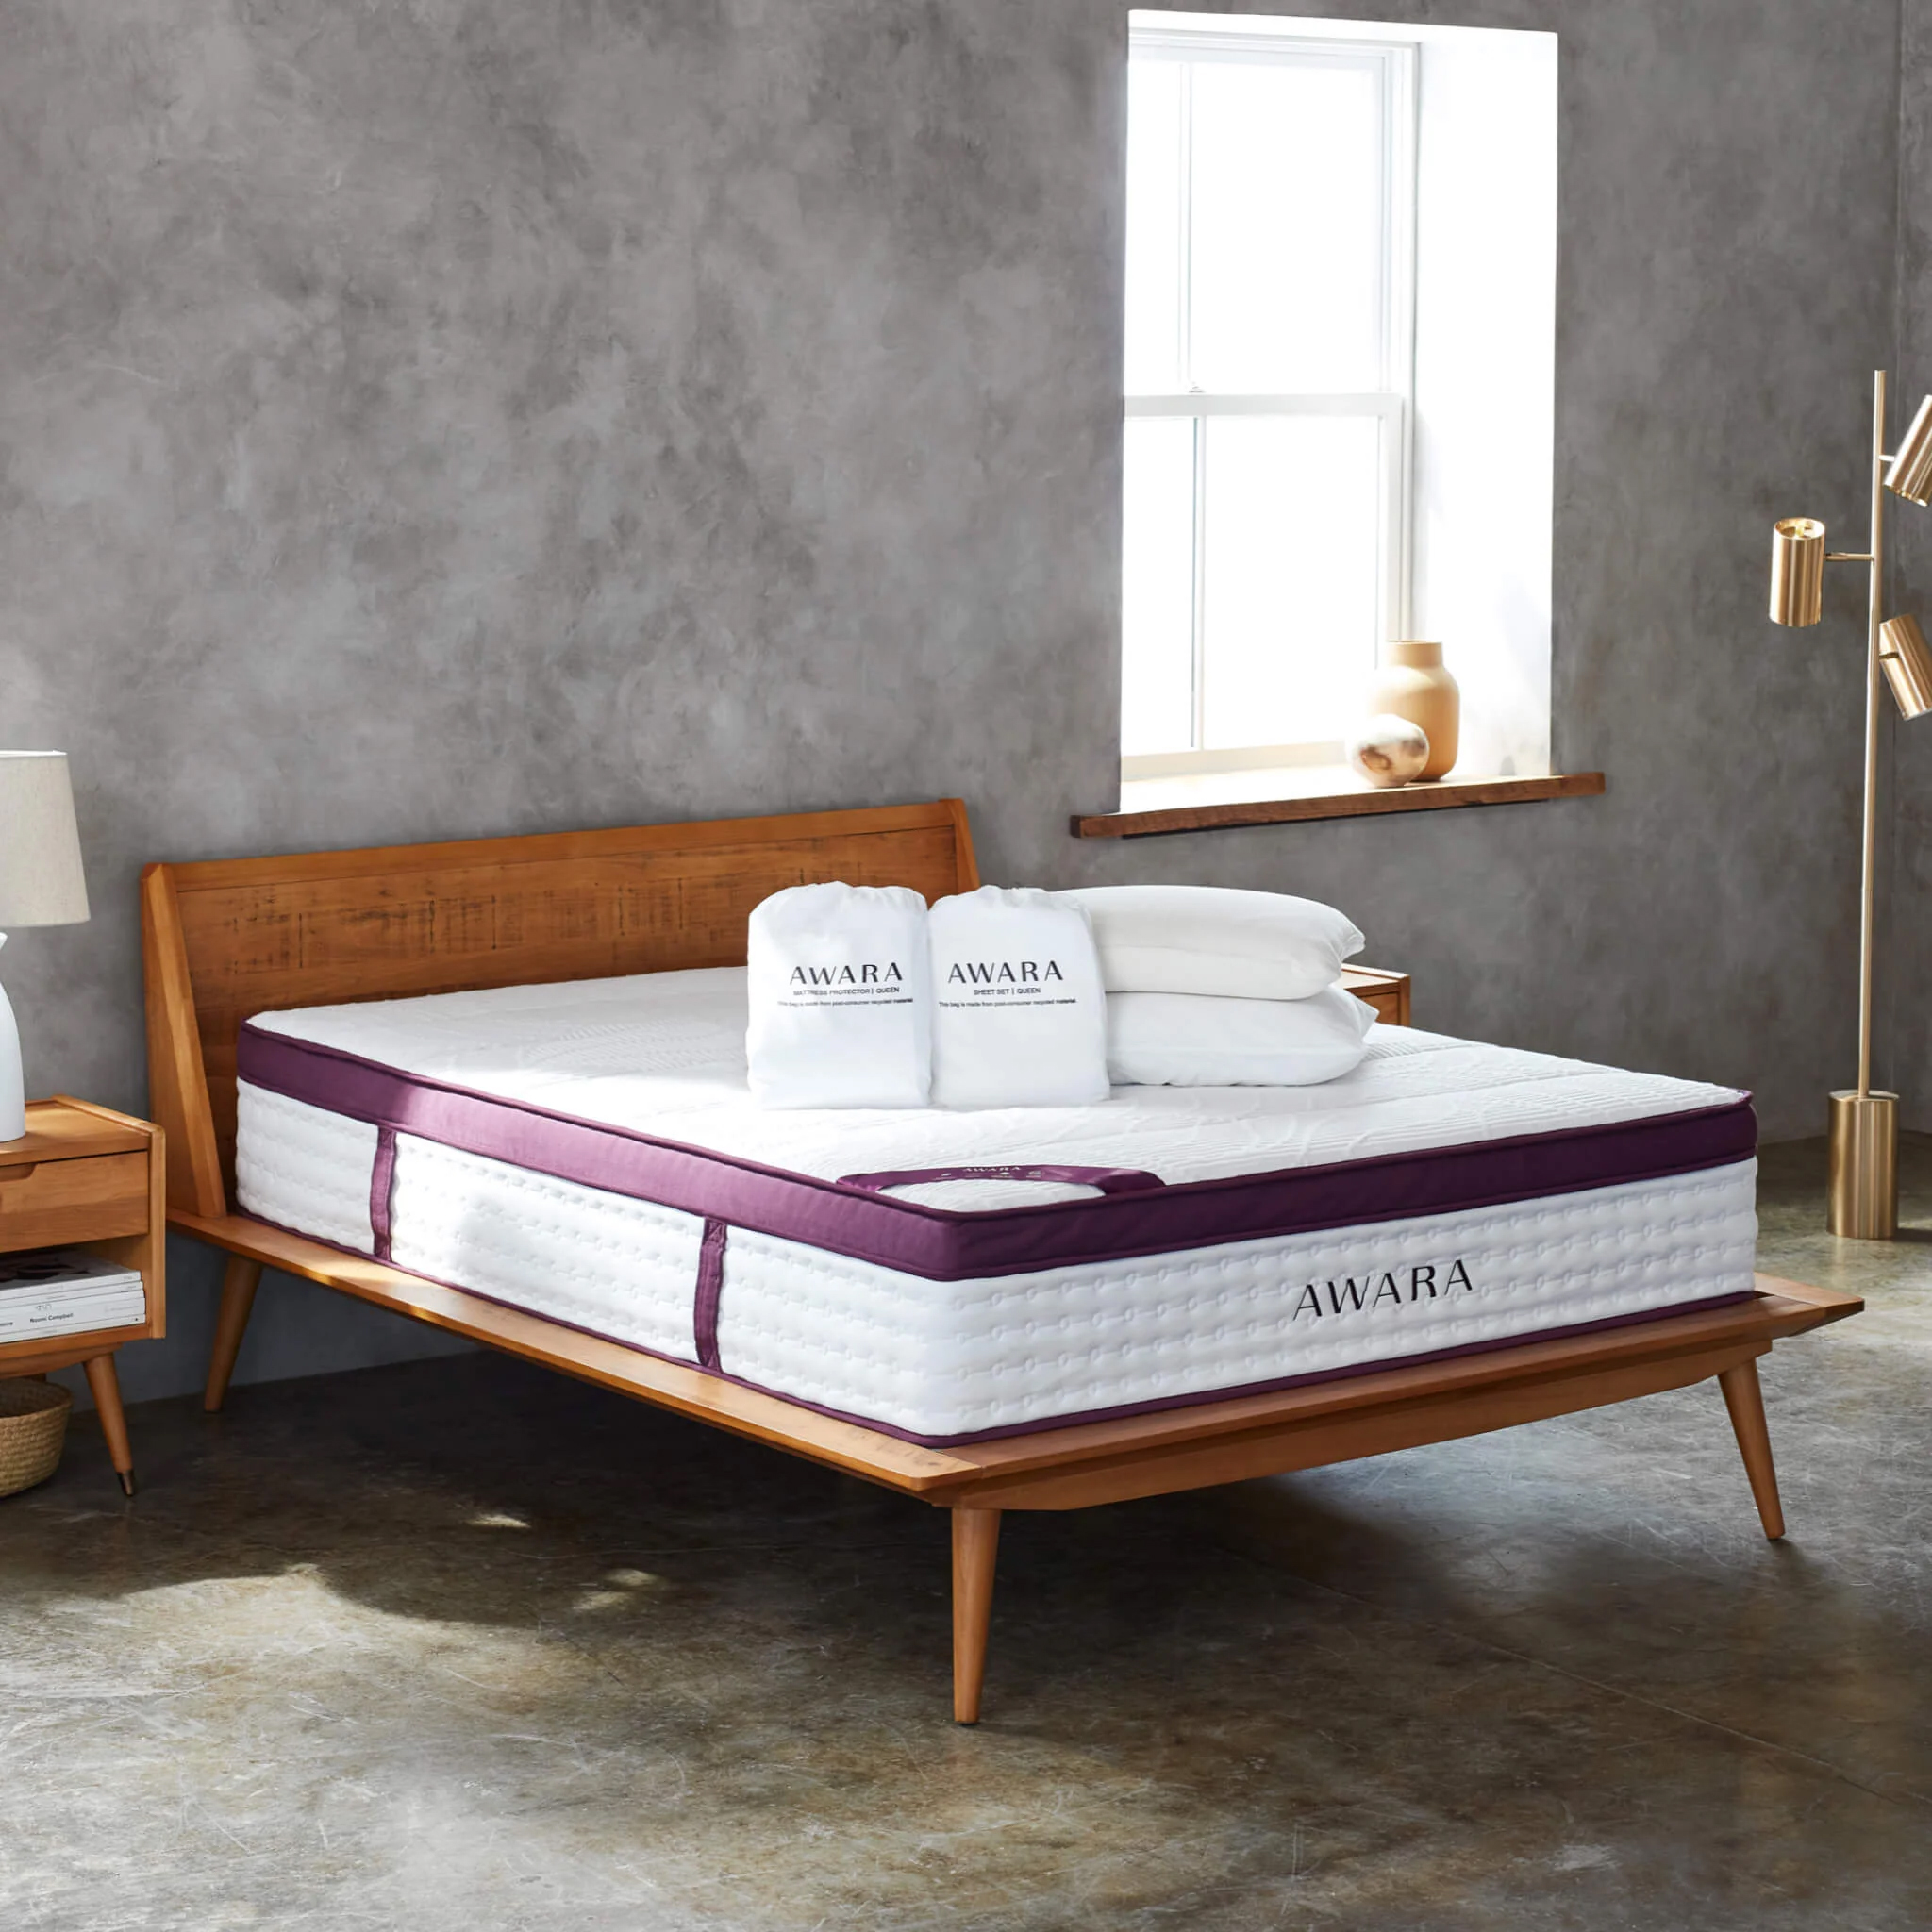 A bed with an Awara mattress.